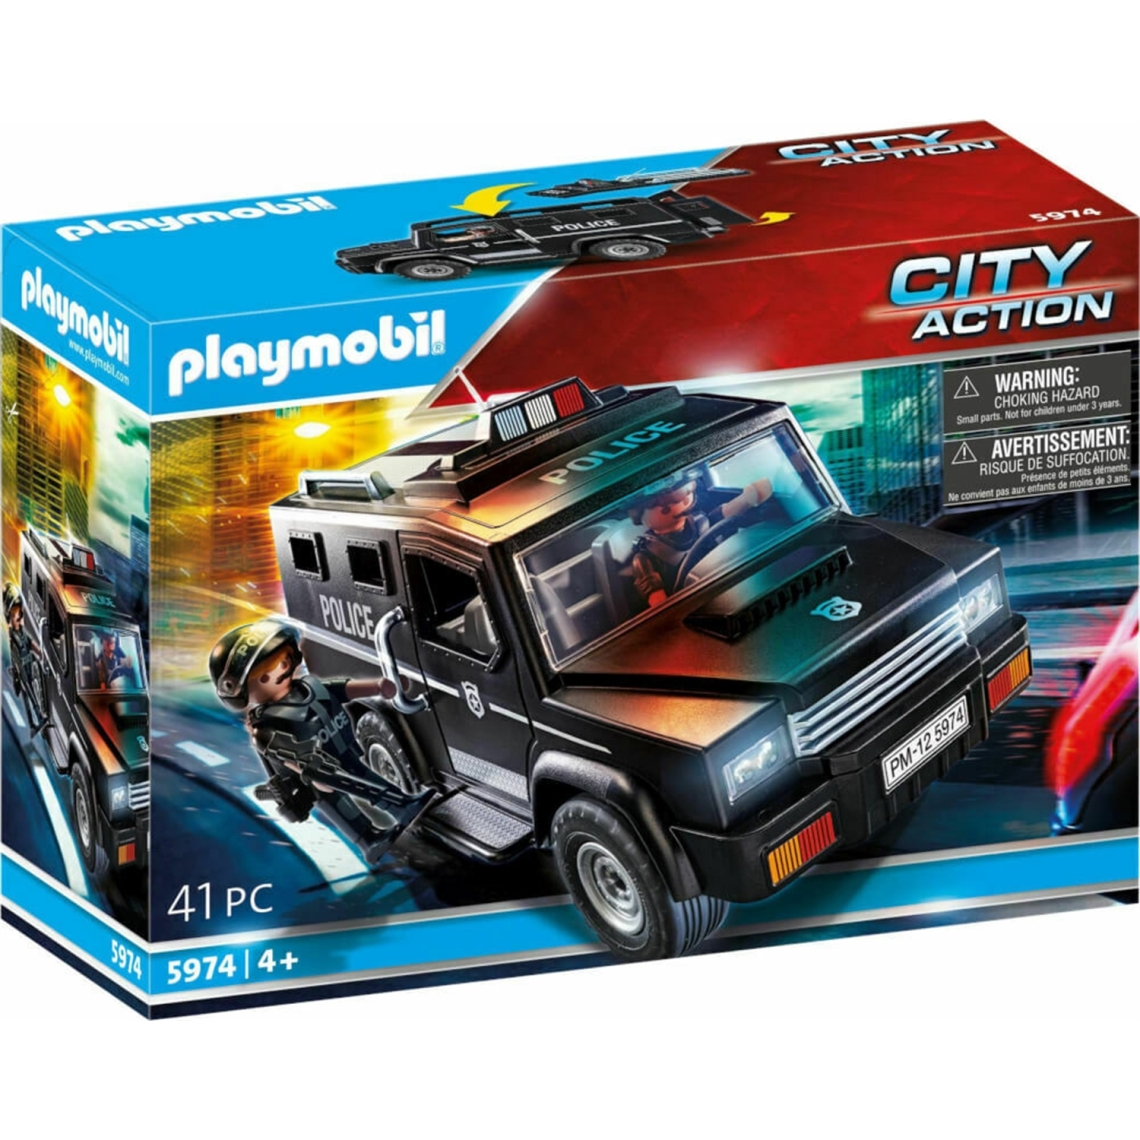 Playmobil - PLAYMOBIL 5974 - City Action - Forces spéciales de police et fourgon - Playmobil